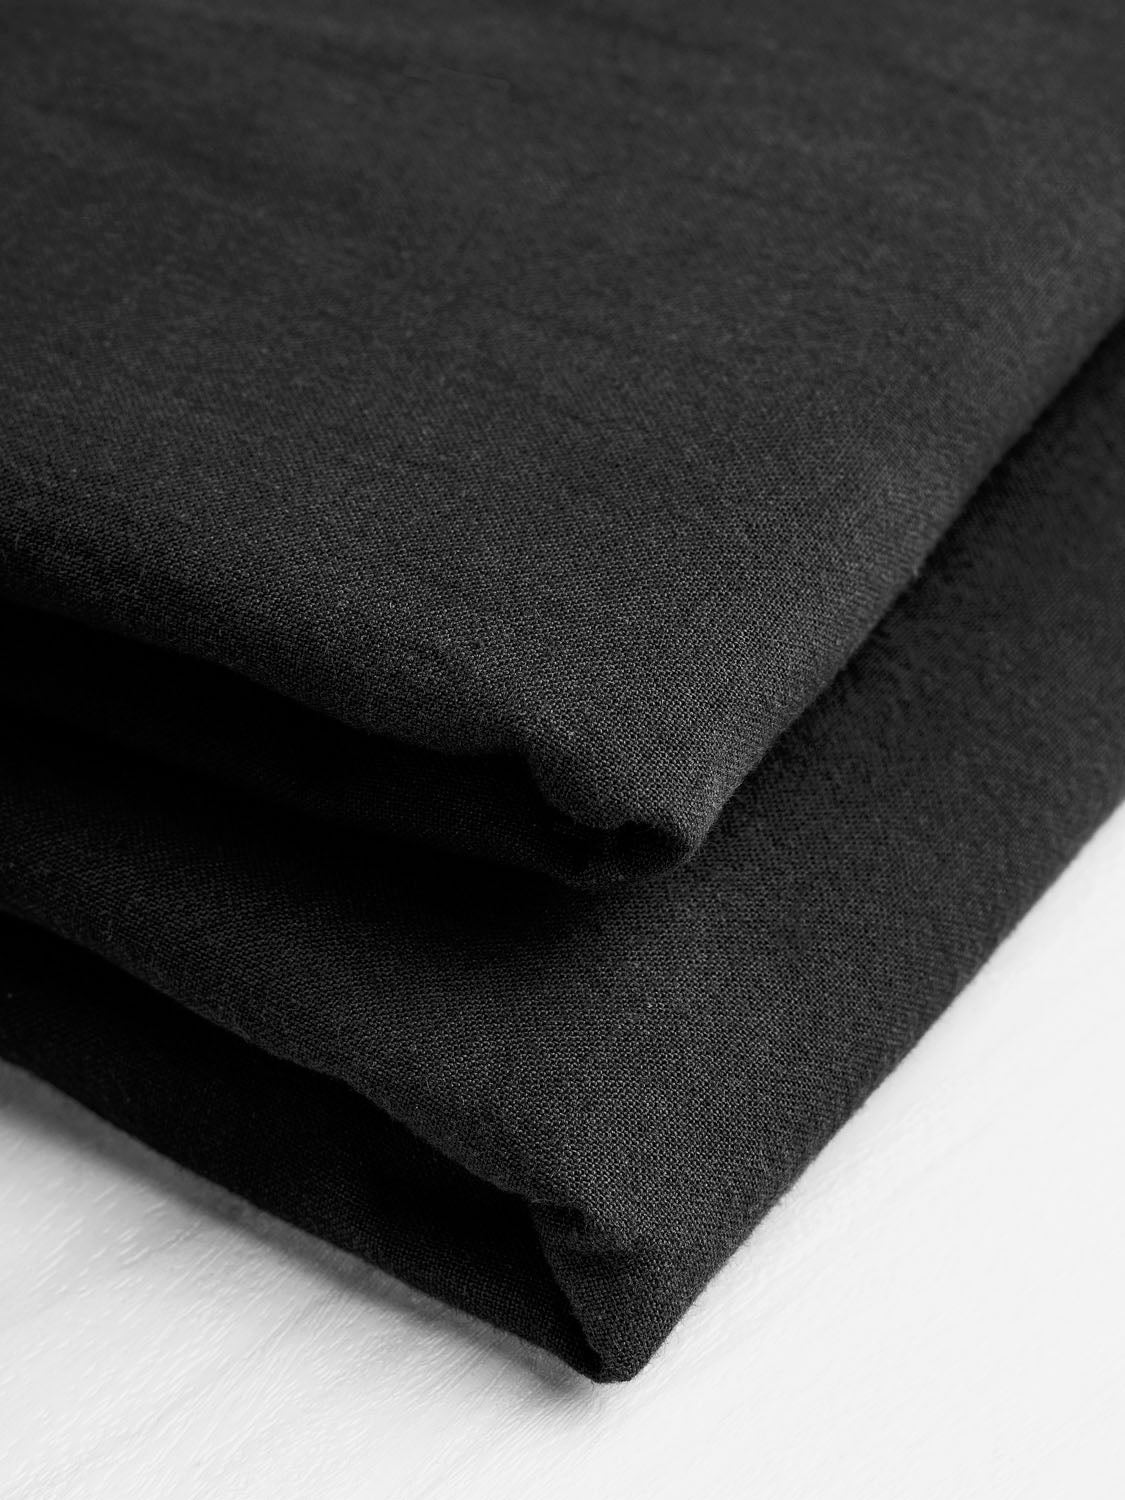 Tumbled Non-Stretch Cotton - Black | Core Fabrics